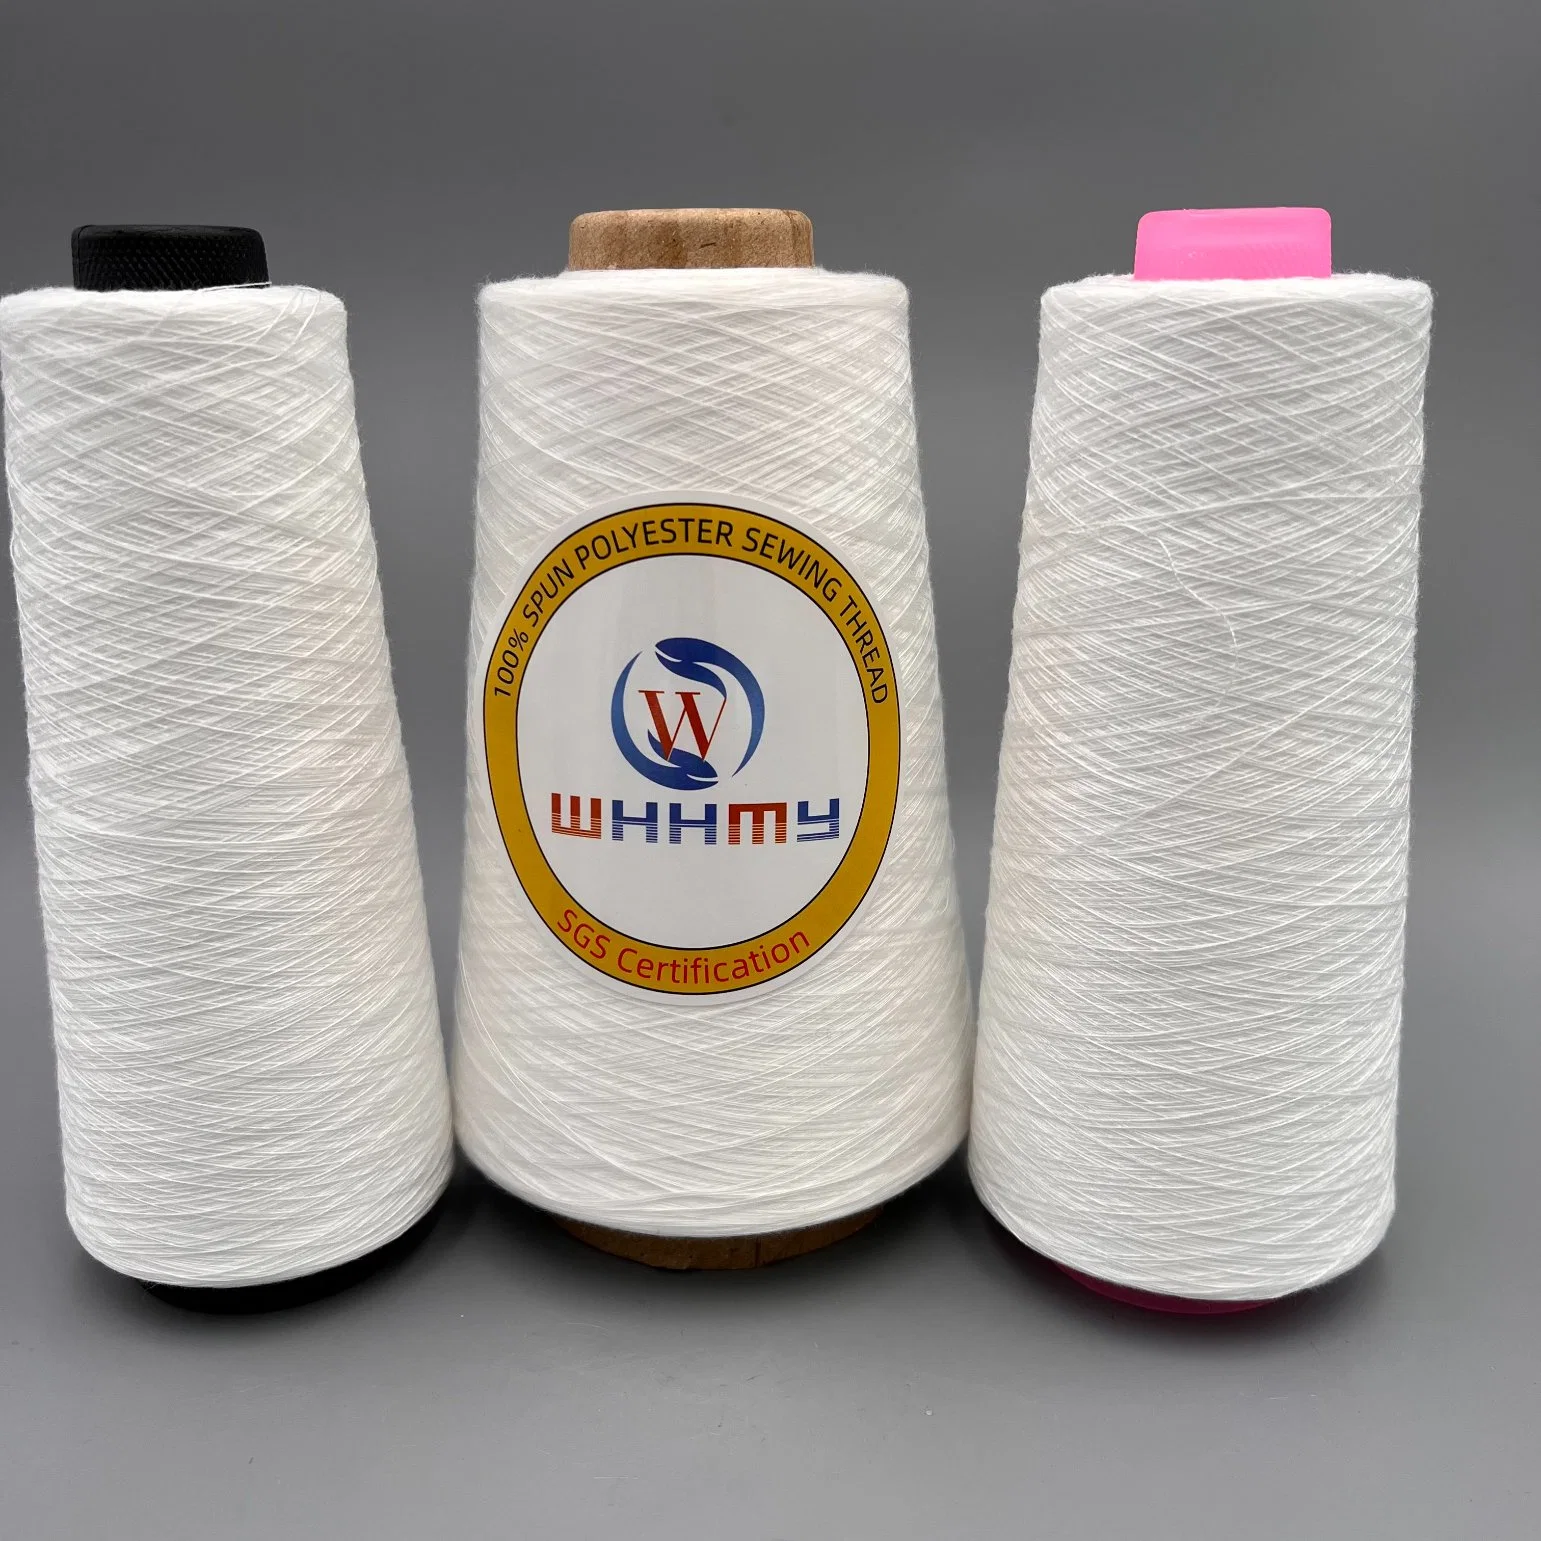 Textilgarn 100% Gesponnen Bright Virgin Gesponnen Polyester Nähfaden Papierkegel für Nähen / Weben / Stricken Fabrik direkt Vertrieb exportierte Standards